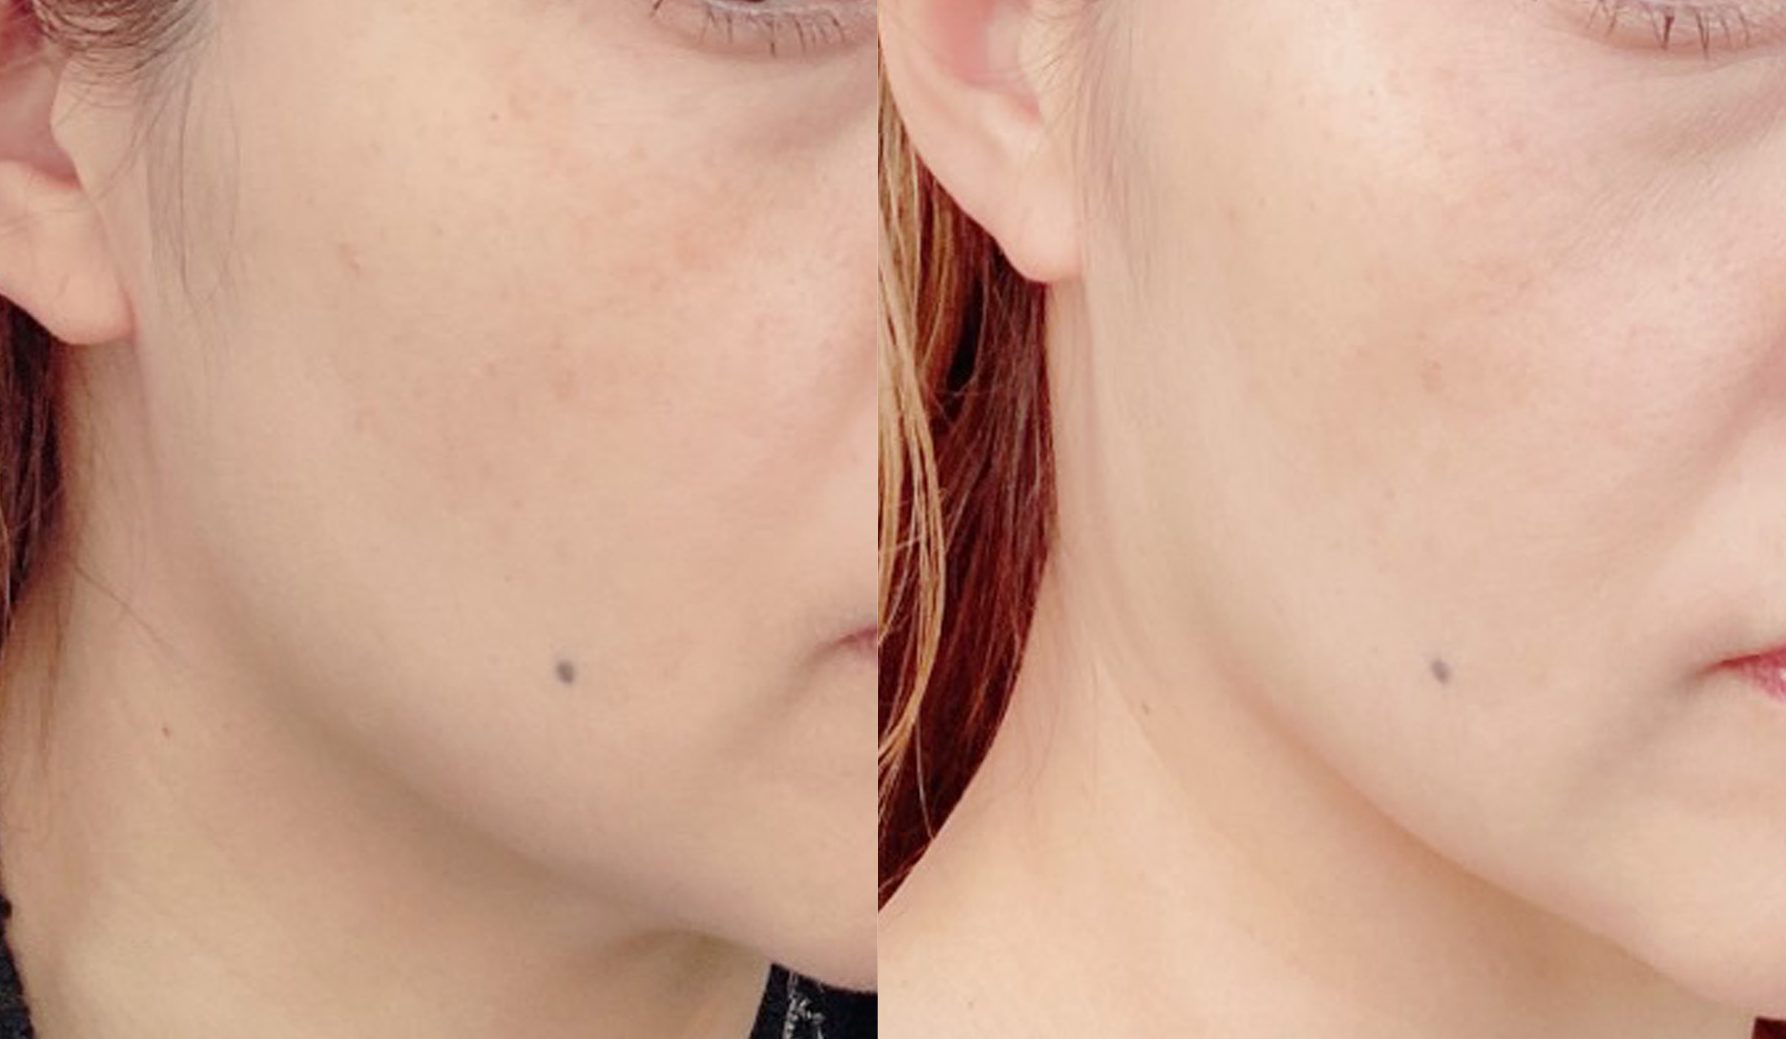 左：使用前。顔の下半分はローションを塗るとしみるほど乾燥でゴワゴワ。しぼんだ印象の肌でした。
右：使用後。水分をたたえたしっとり肌に！ くすんでいた肌色も少し明るくなった気がします
